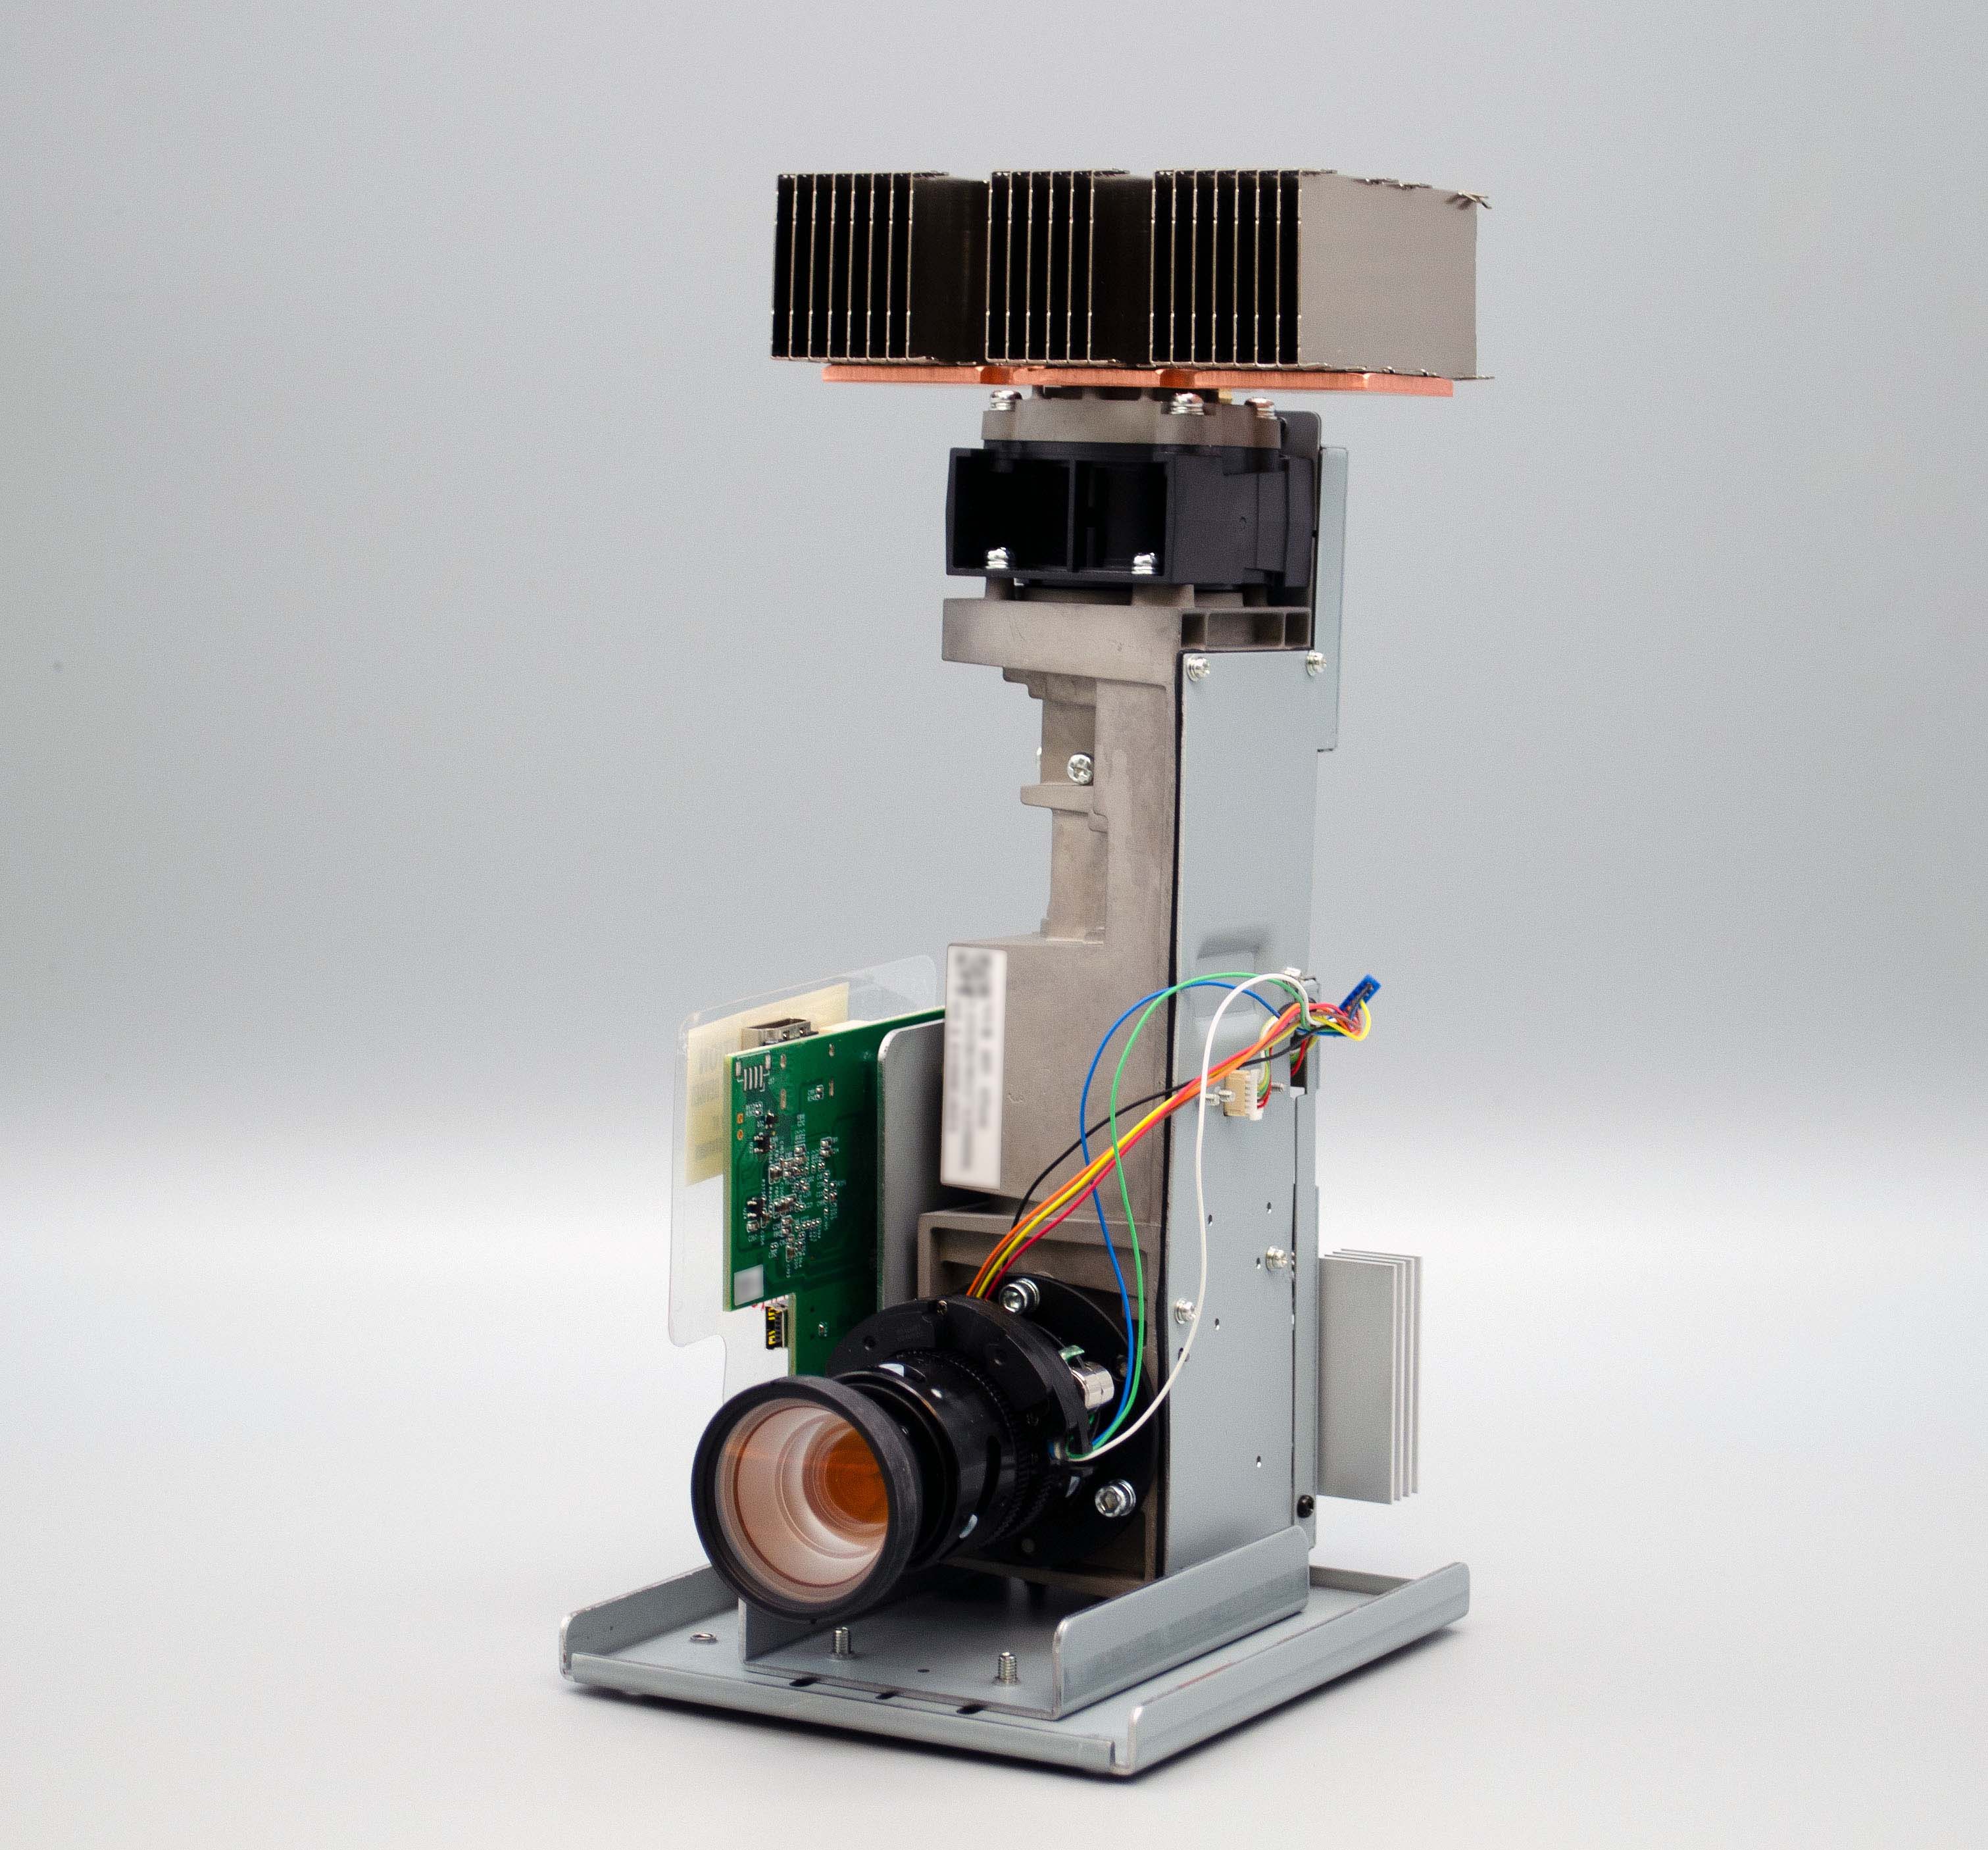 NVM2 / NVR2 / NVM2+ / NVR2+  Projektor - Light Engine BURMS Young Optics  